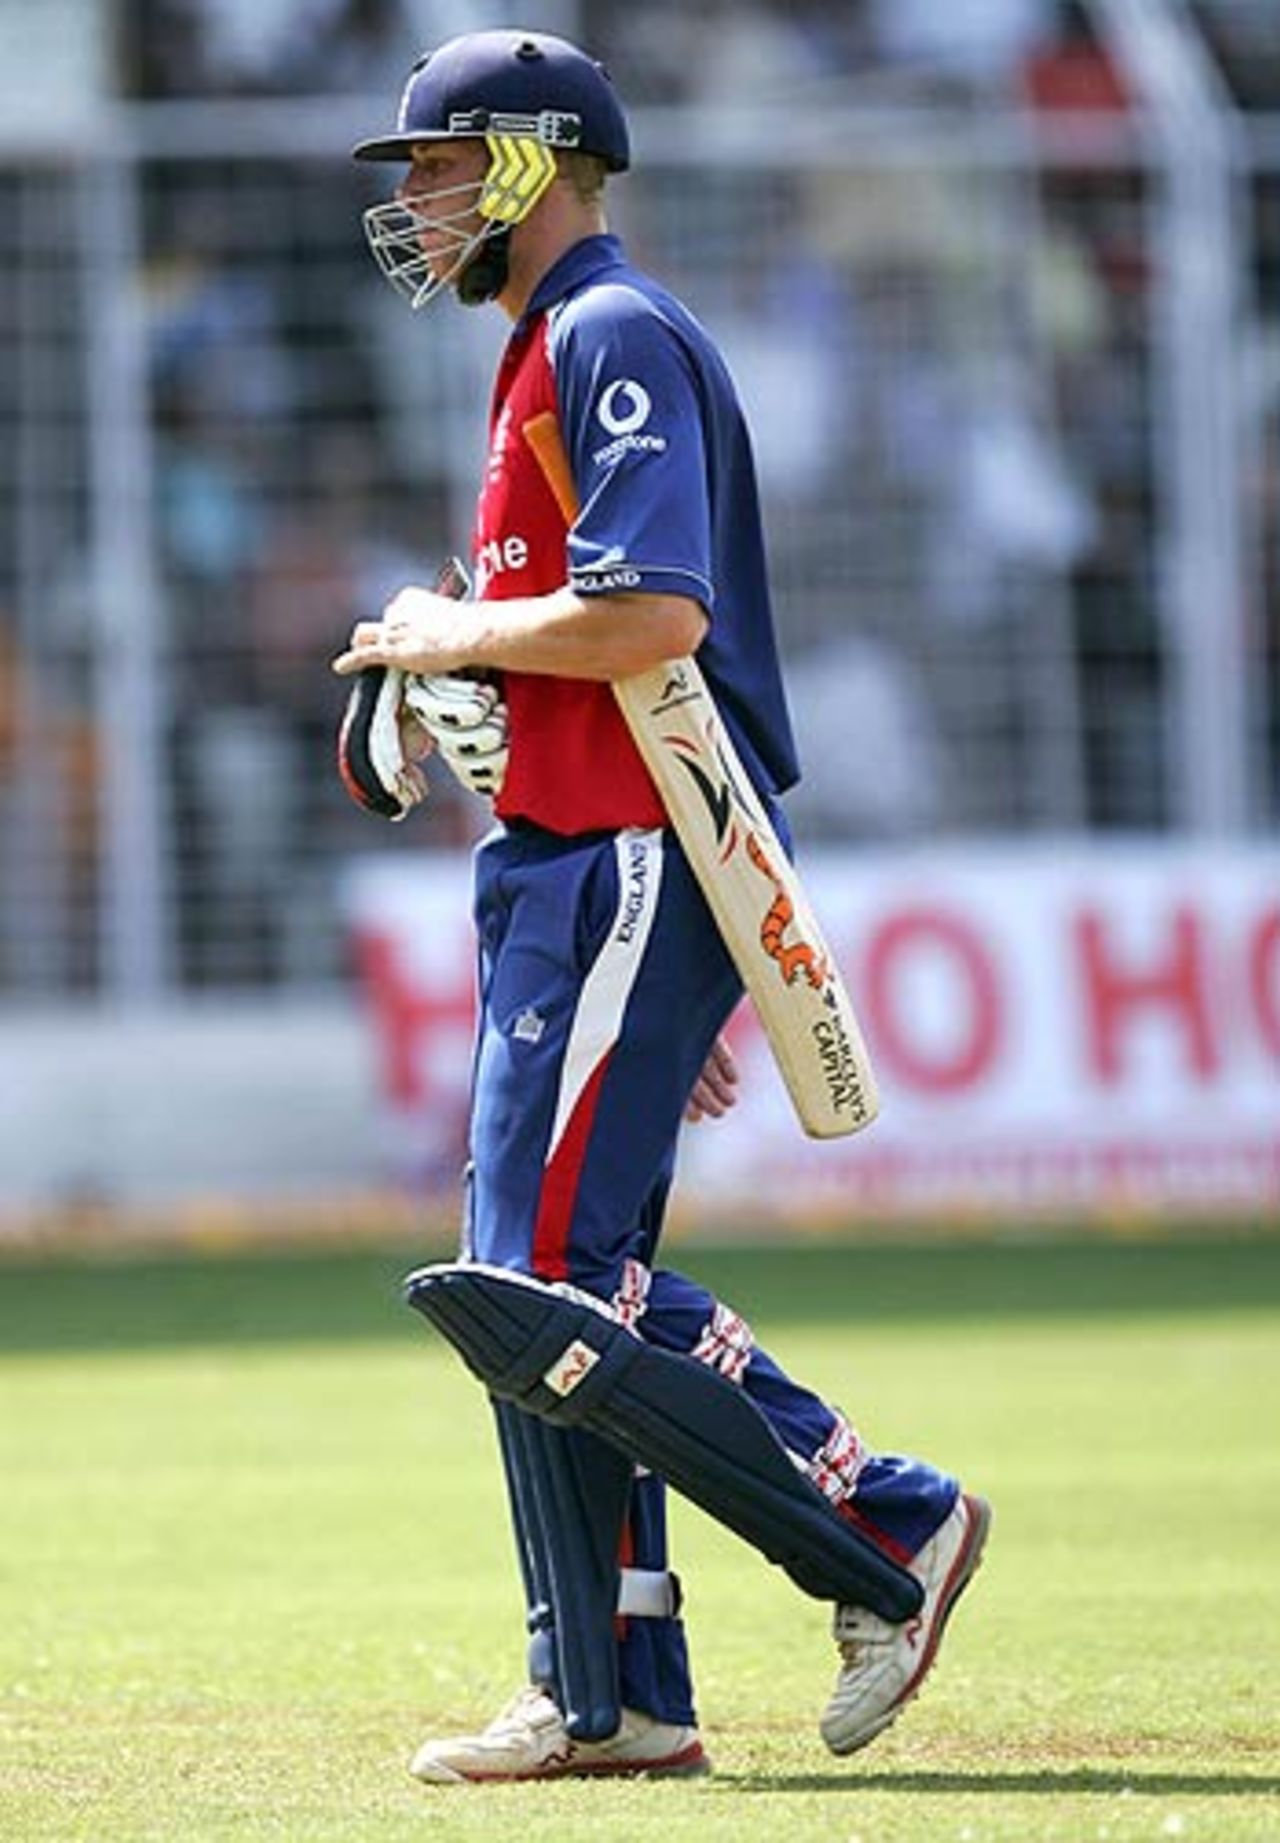 Andrew Flintoff departs for 15, India v England, 3rd ODI, Goa, April 3, 2006